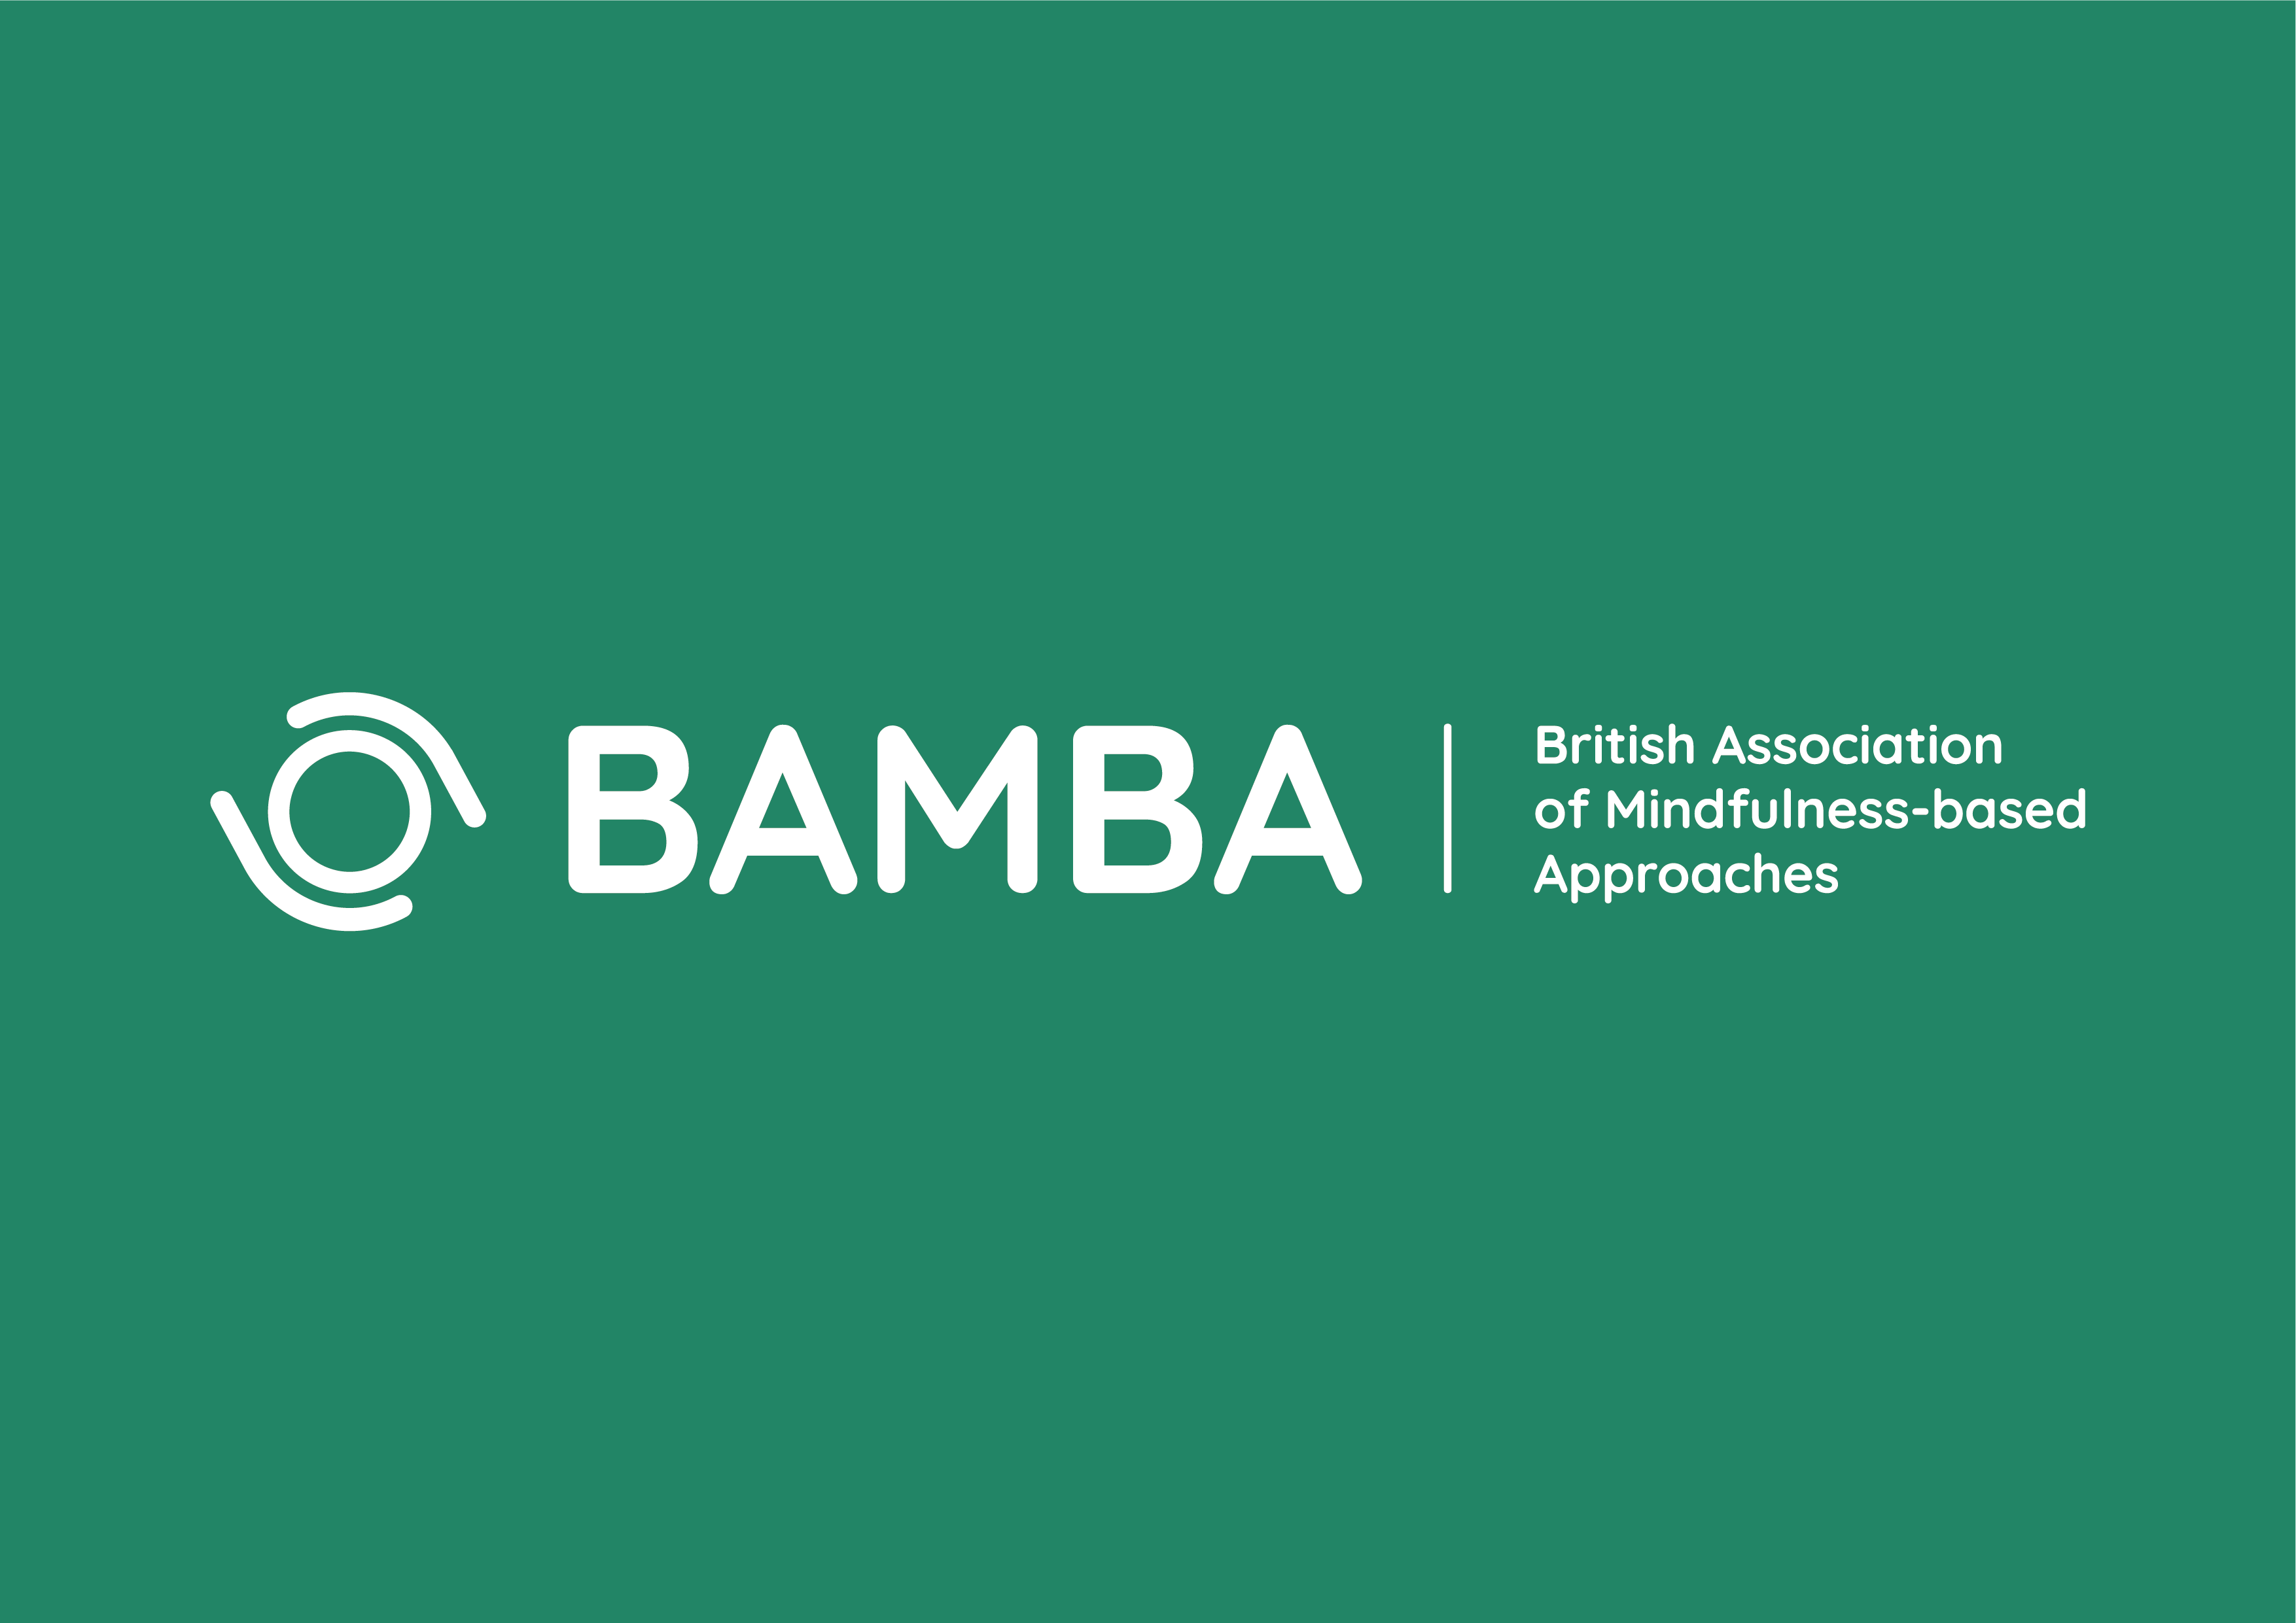 BAMBA LOGO WHITE ON GREEN